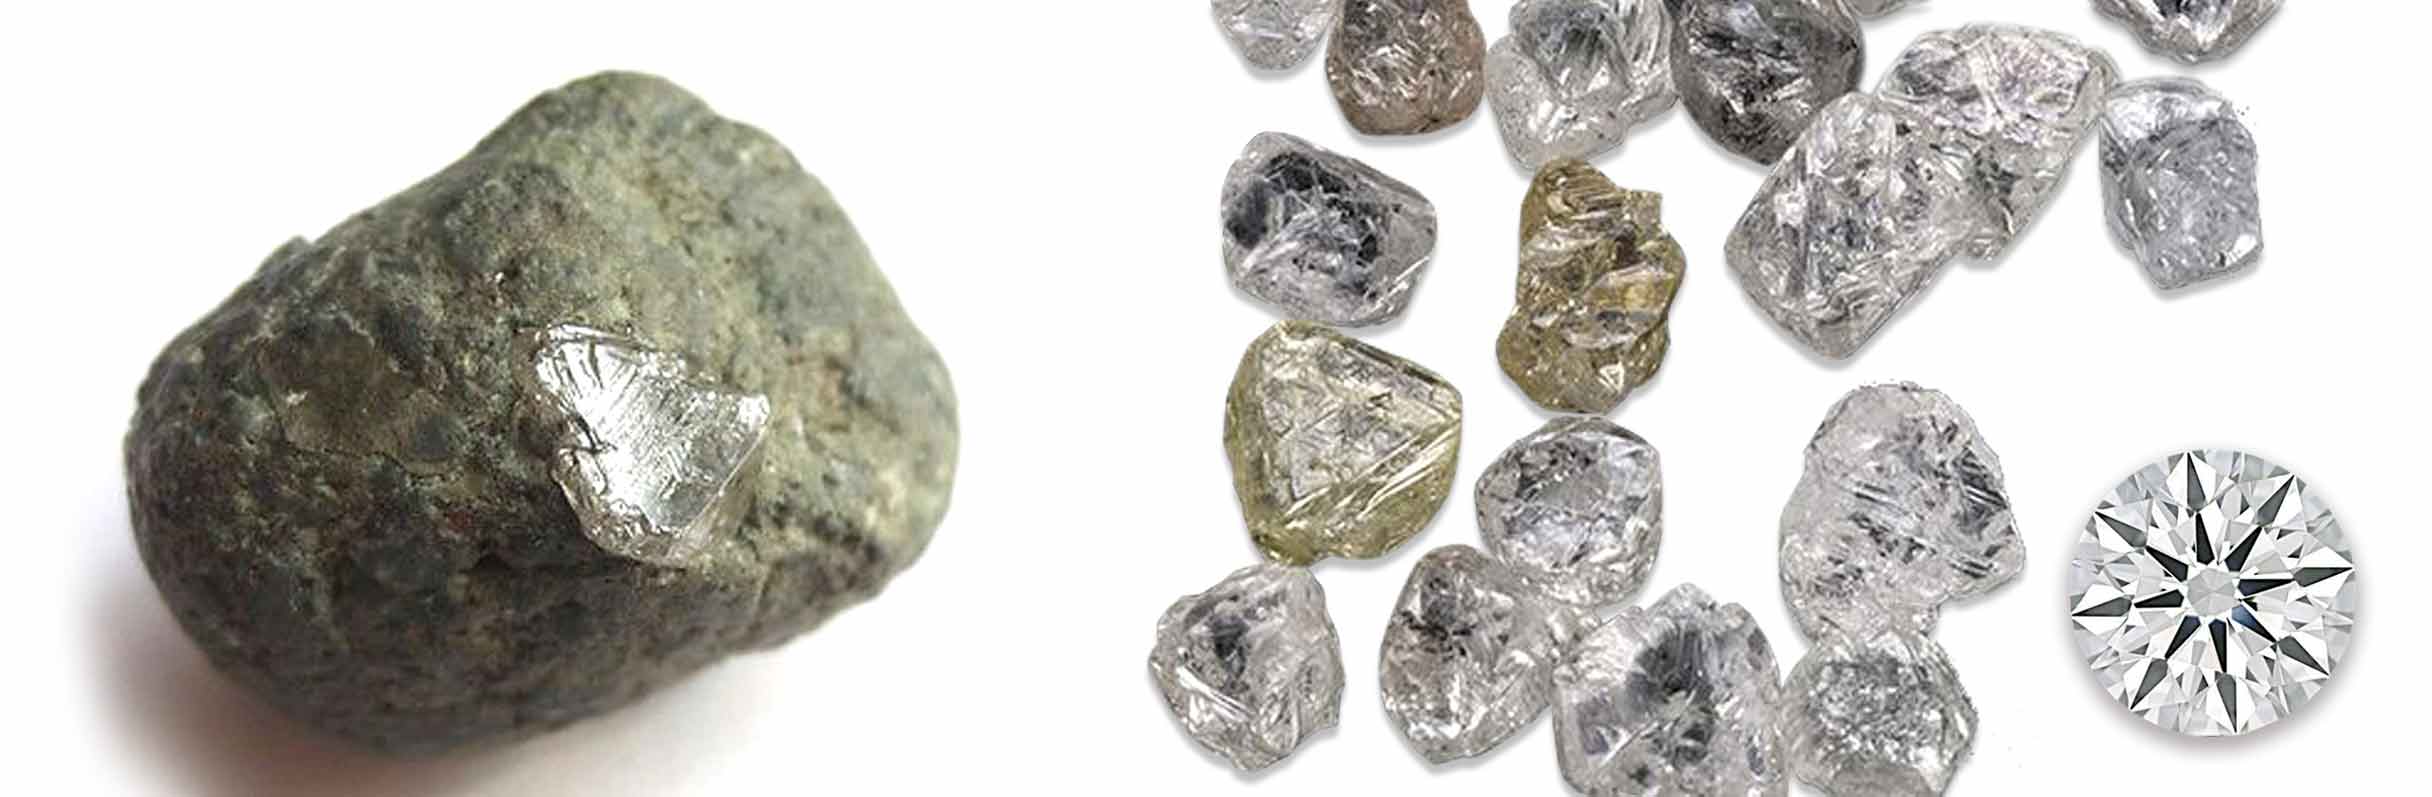 Кімберліт, неогранений природні алмази та огранований діамант